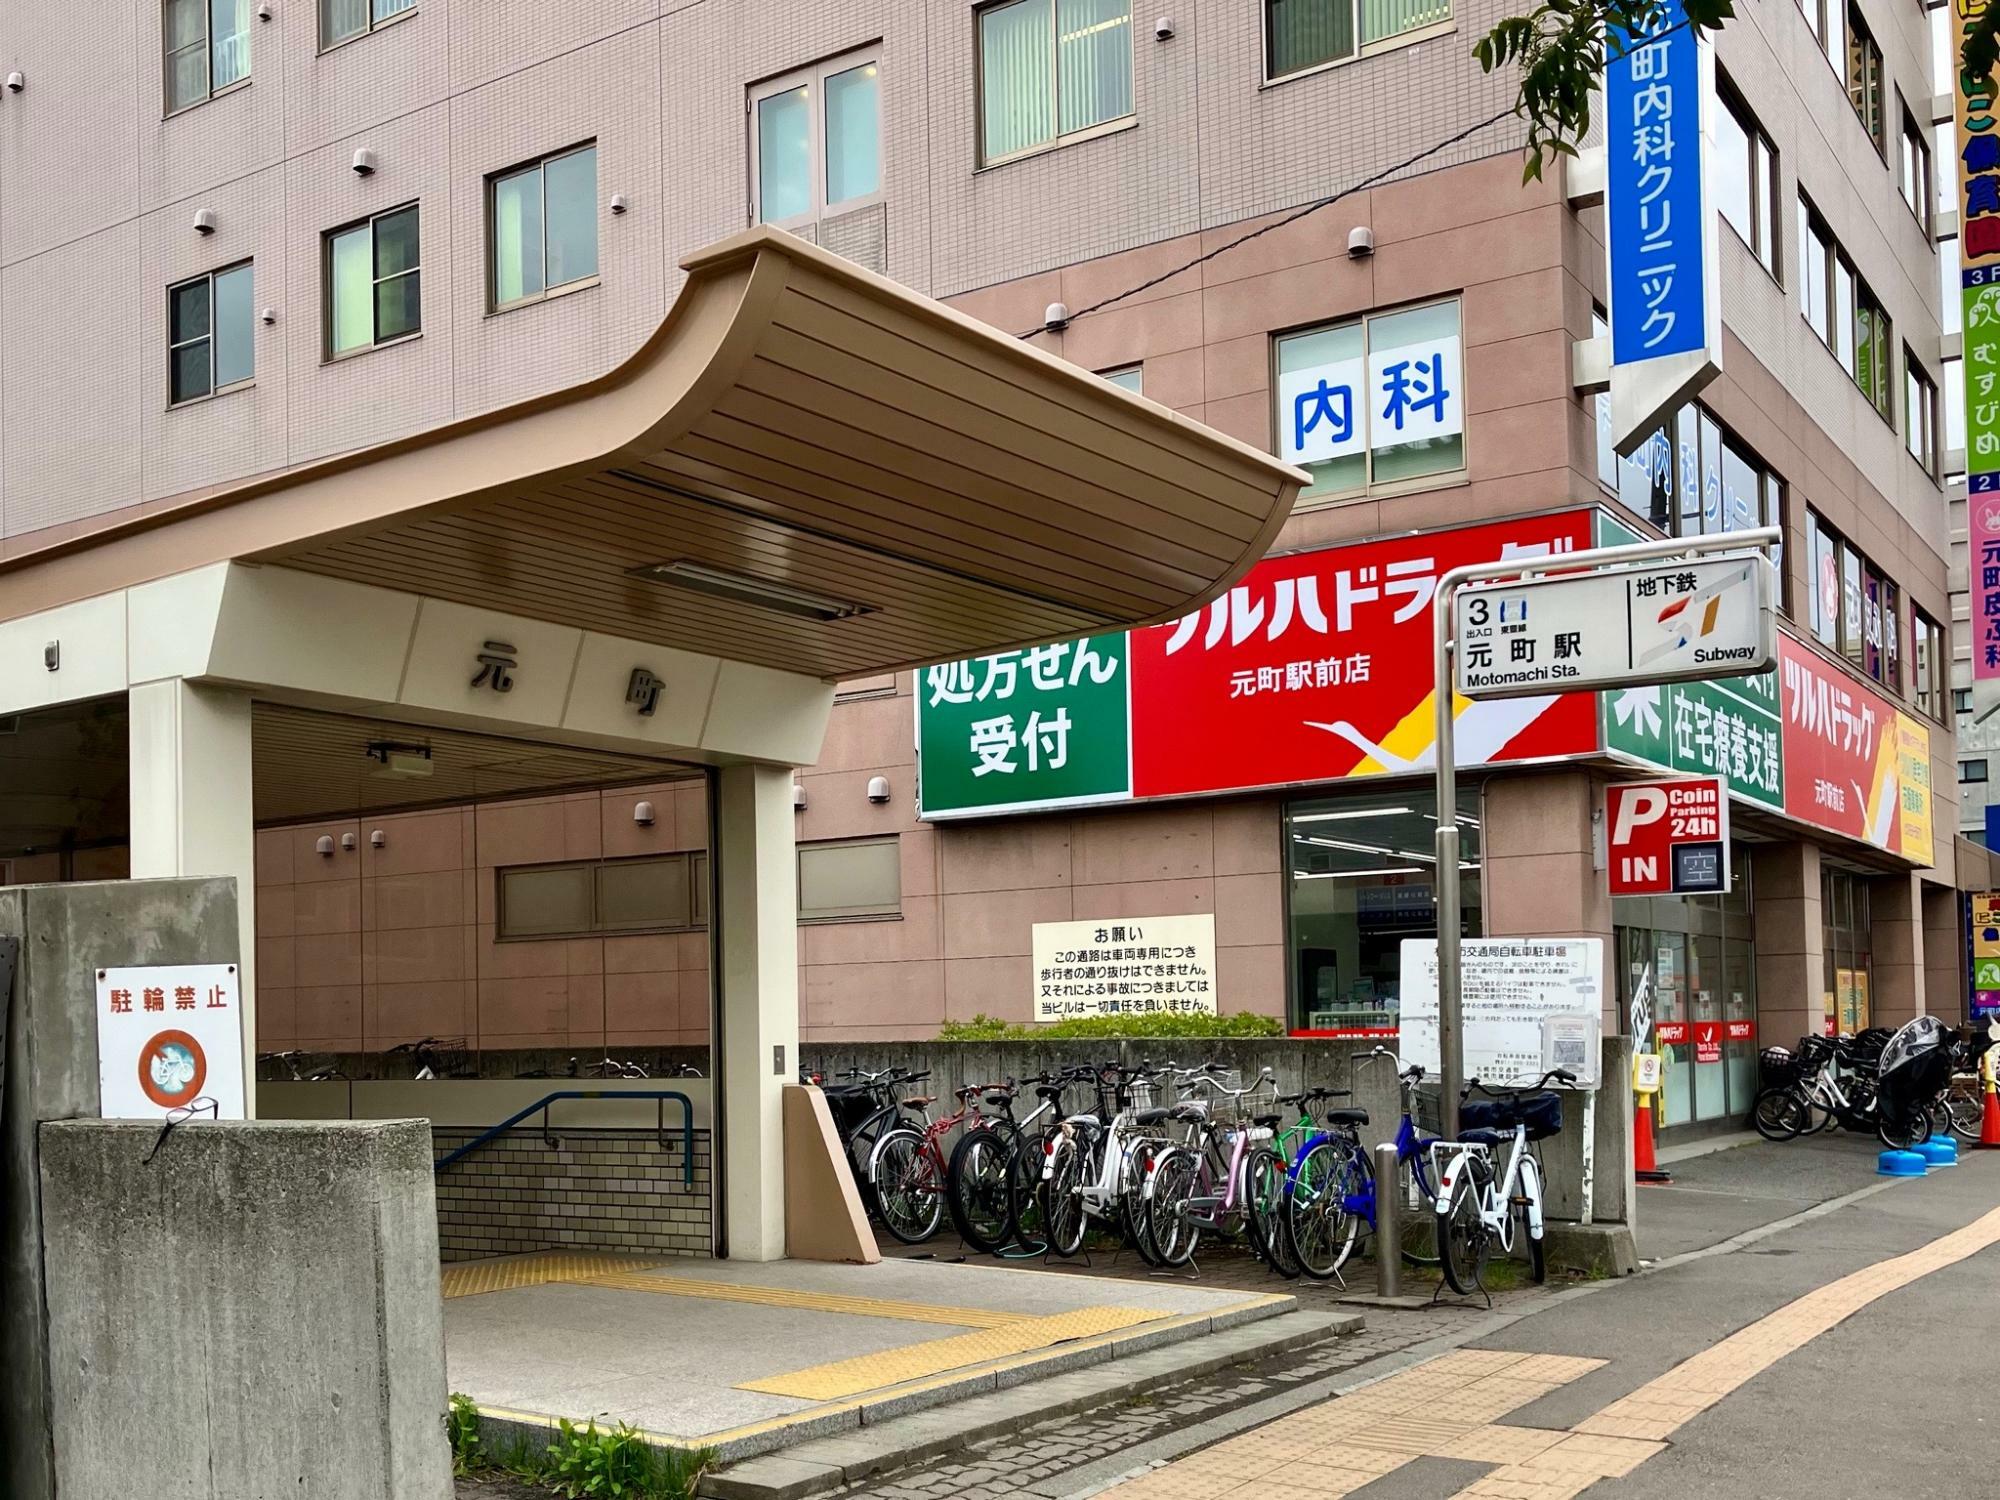 札幌地下鉄東豊線「元町」駅